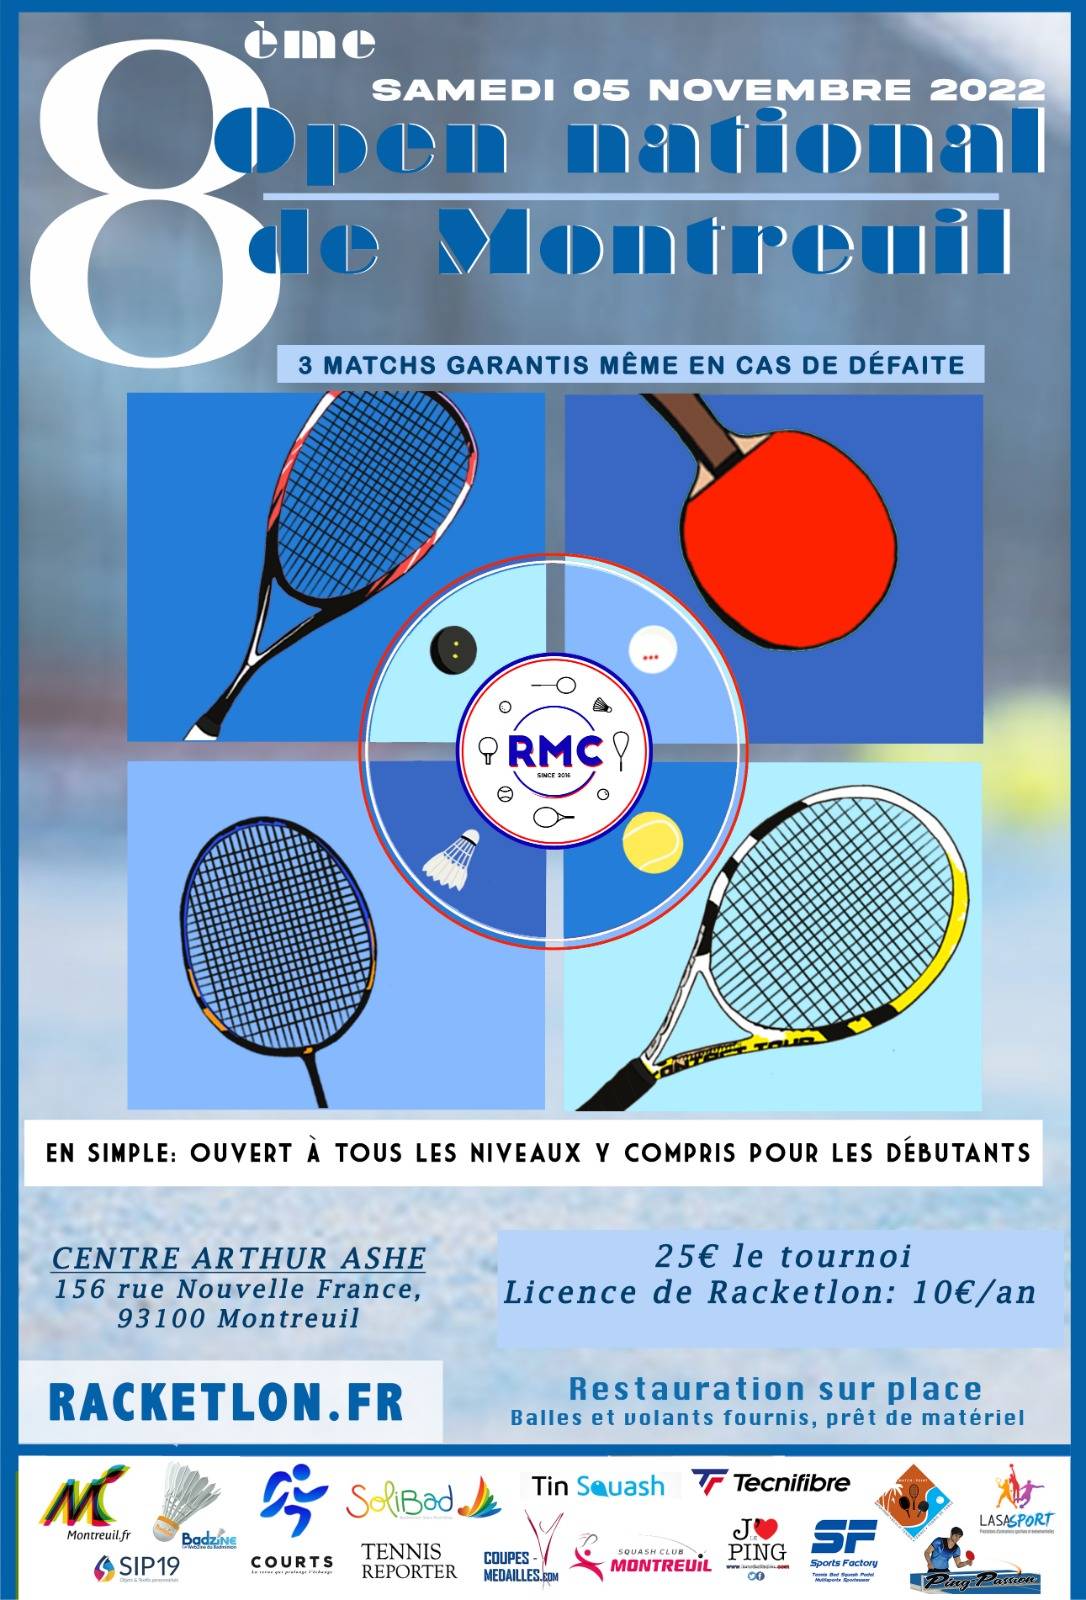 Affiche de 8ème open national de Montreuil (simple)